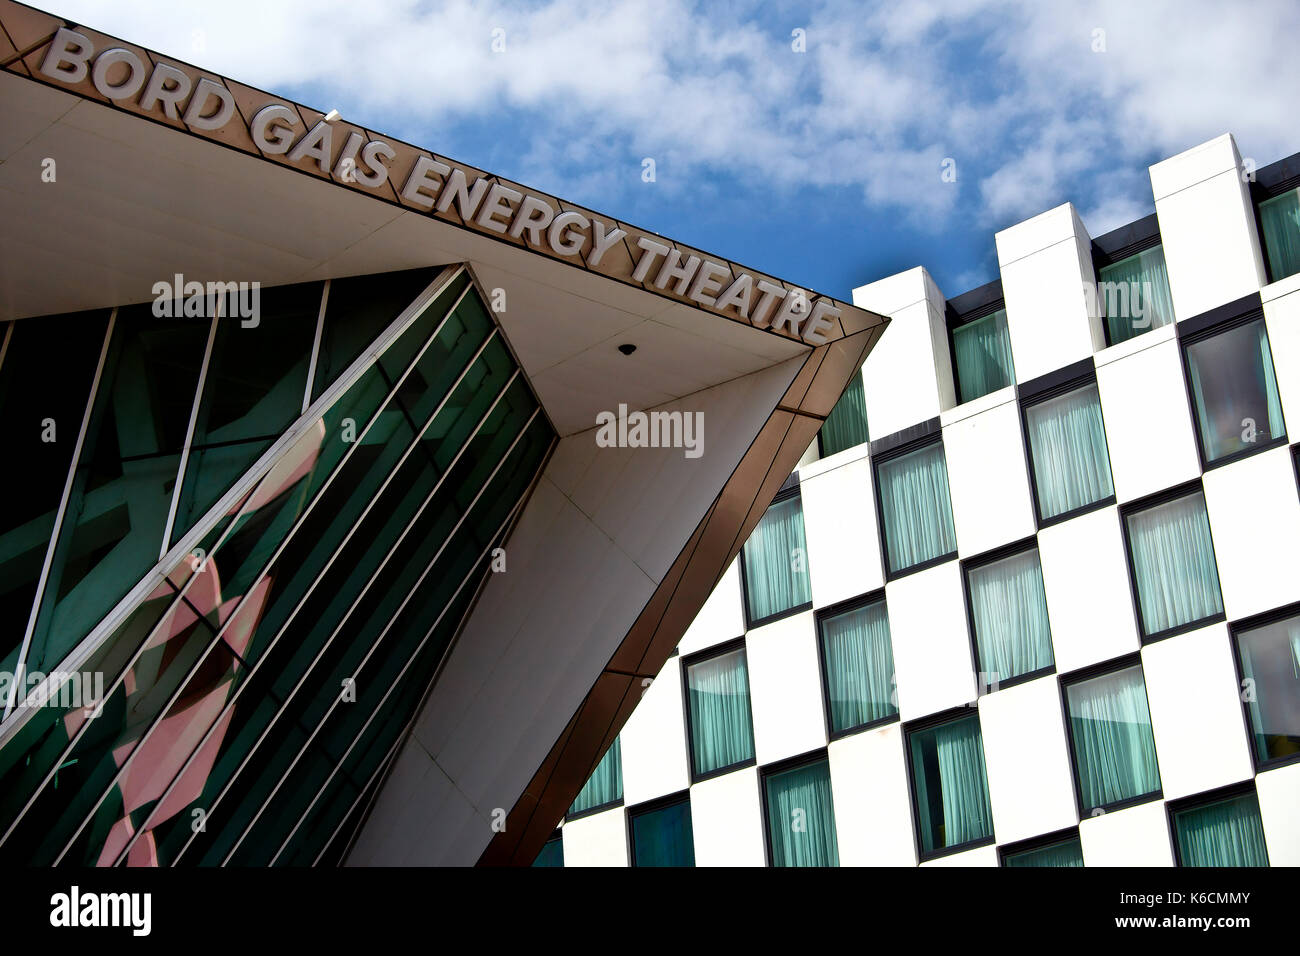 Bord Gais teatro di energia da architetto americano Daniel Libeskind e la facciata del marcatore Hotel, Grand Canal Square, Docklands. Dublino, Irlanda, Europa Foto Stock